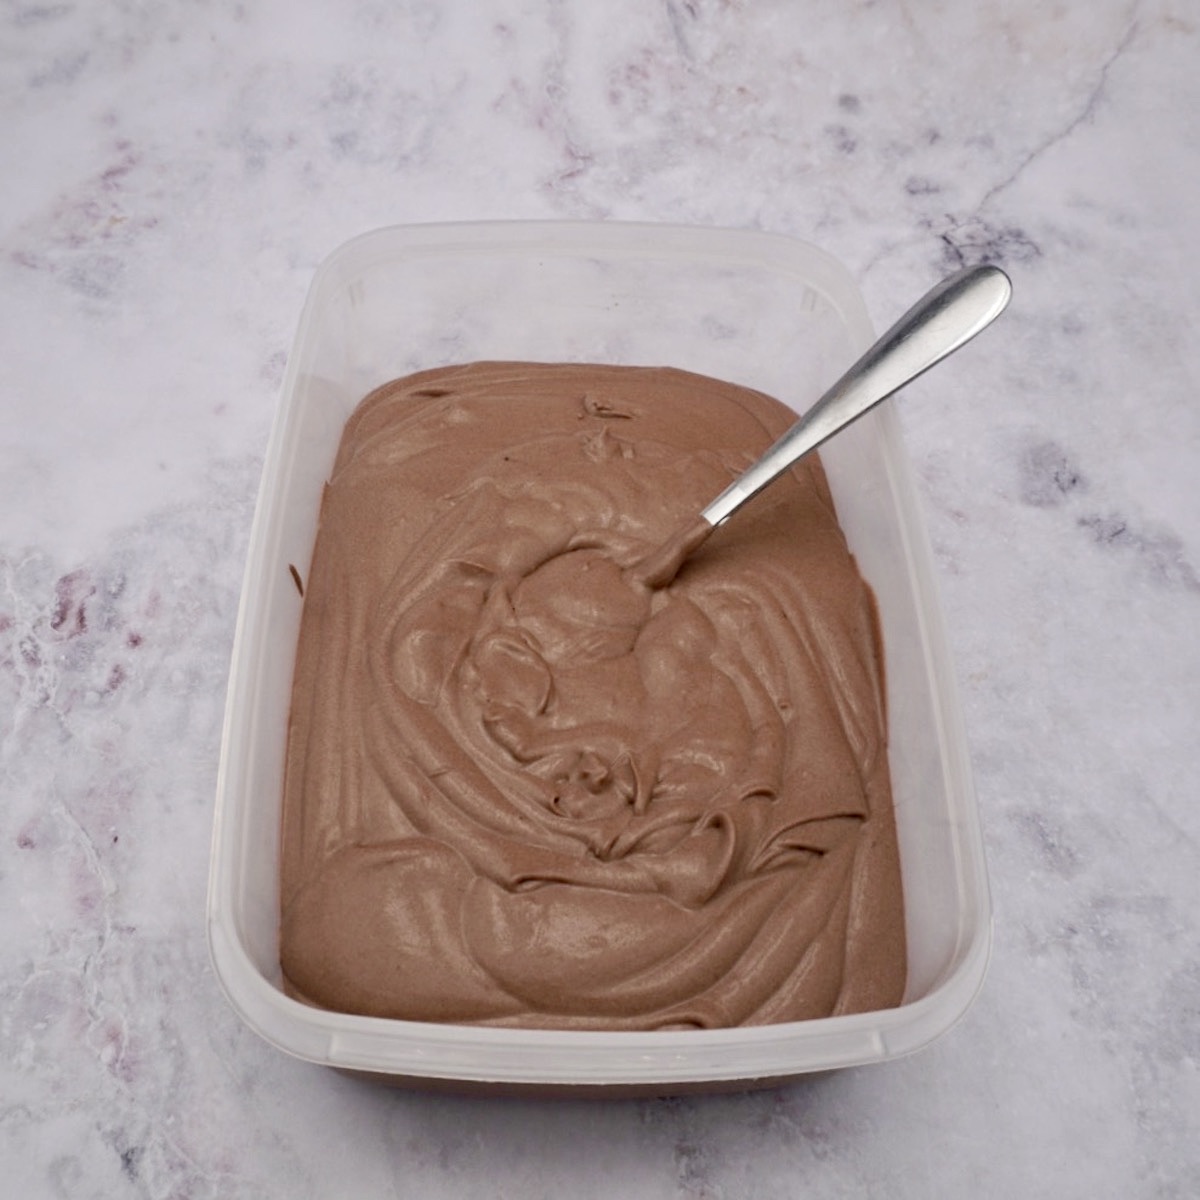 Preparing no churn chocolate ice cream